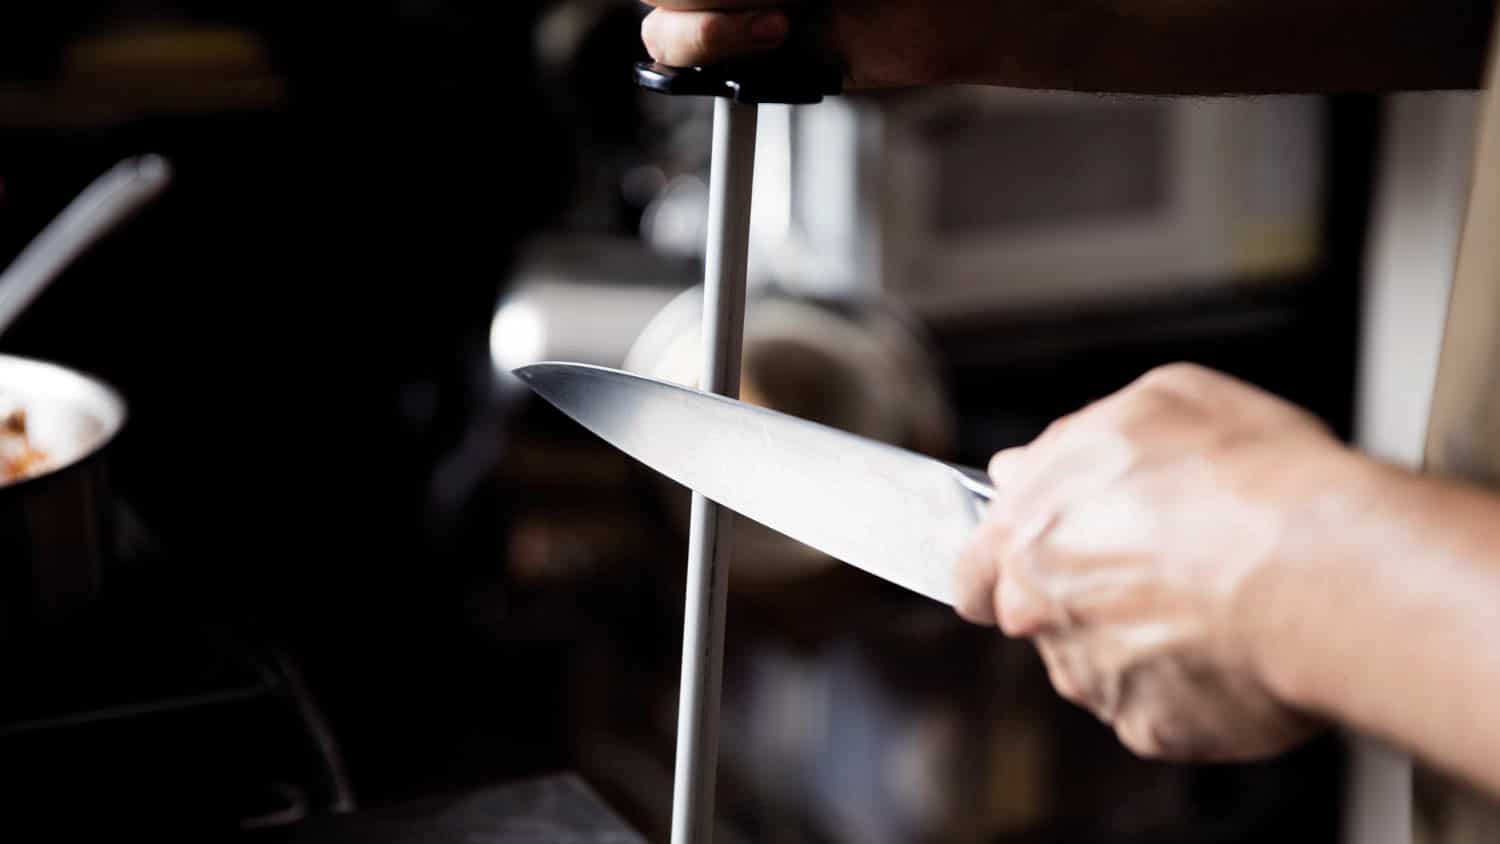 Chaira diamante profesional para afilar cuchillos 12 30 cms de hoja ovalada mango ergonomico engomado afilador de cuchillos profesional valido para cuchillos cocina profesional 